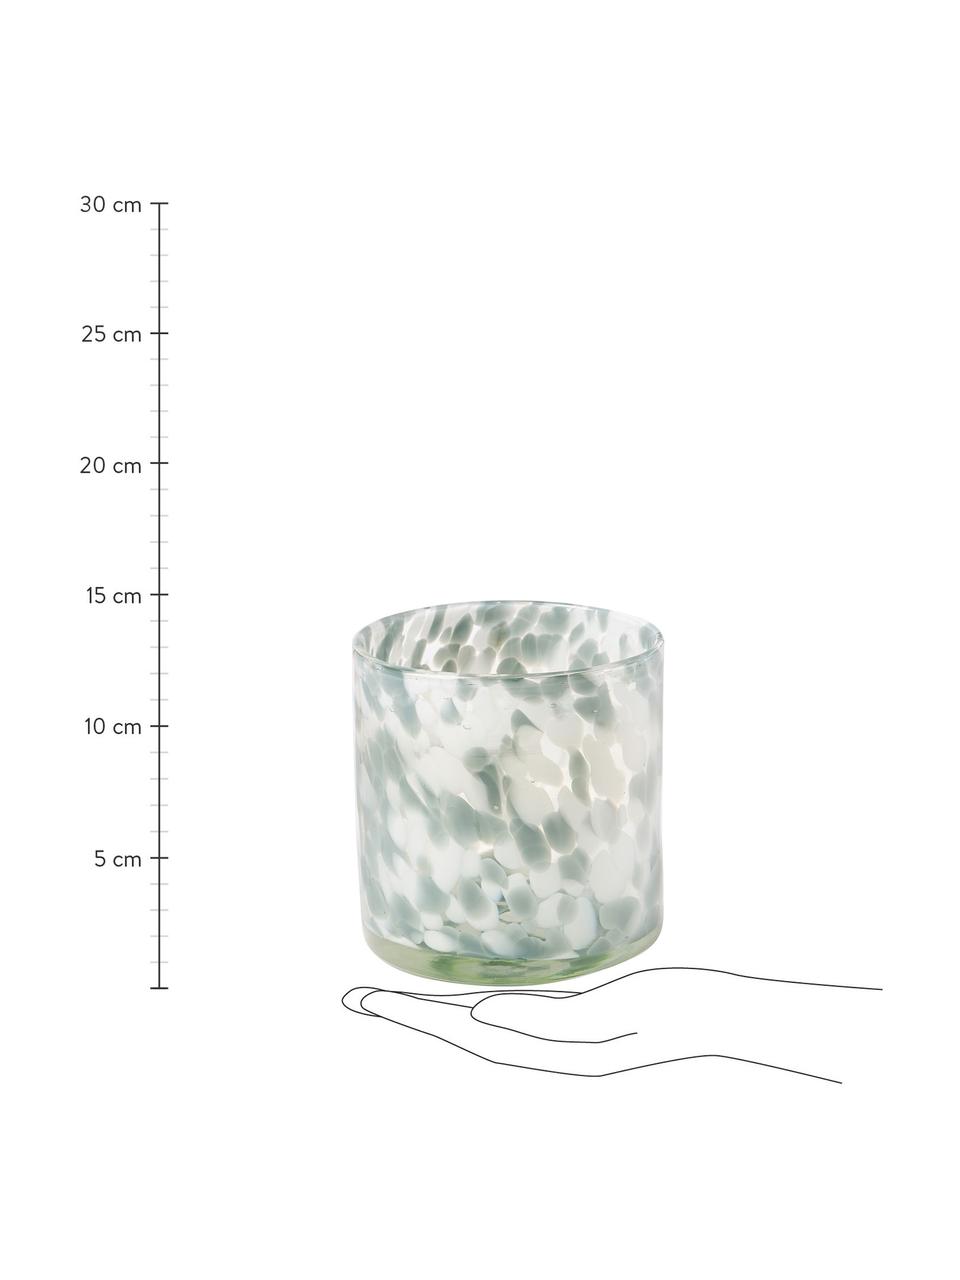 Teelichthalter Bablu mit Tuptenmuster, Glas, Weiß, Ø 12 x H 12 cm